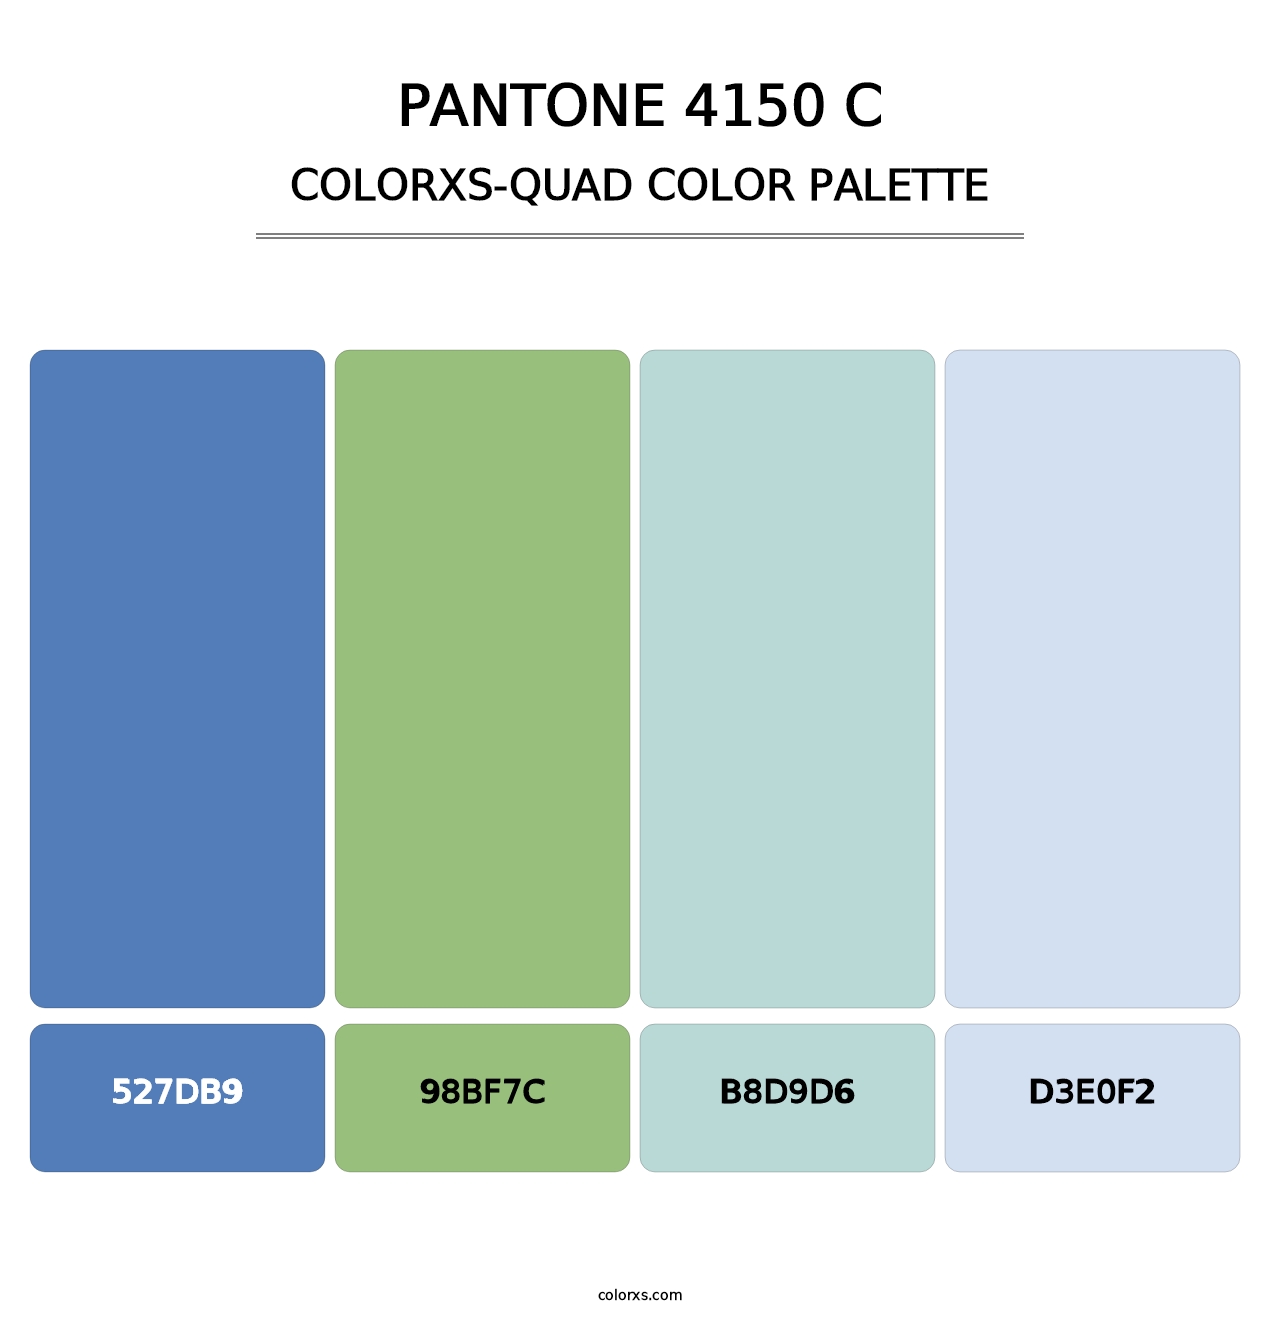 PANTONE 4150 C - Colorxs Quad Palette